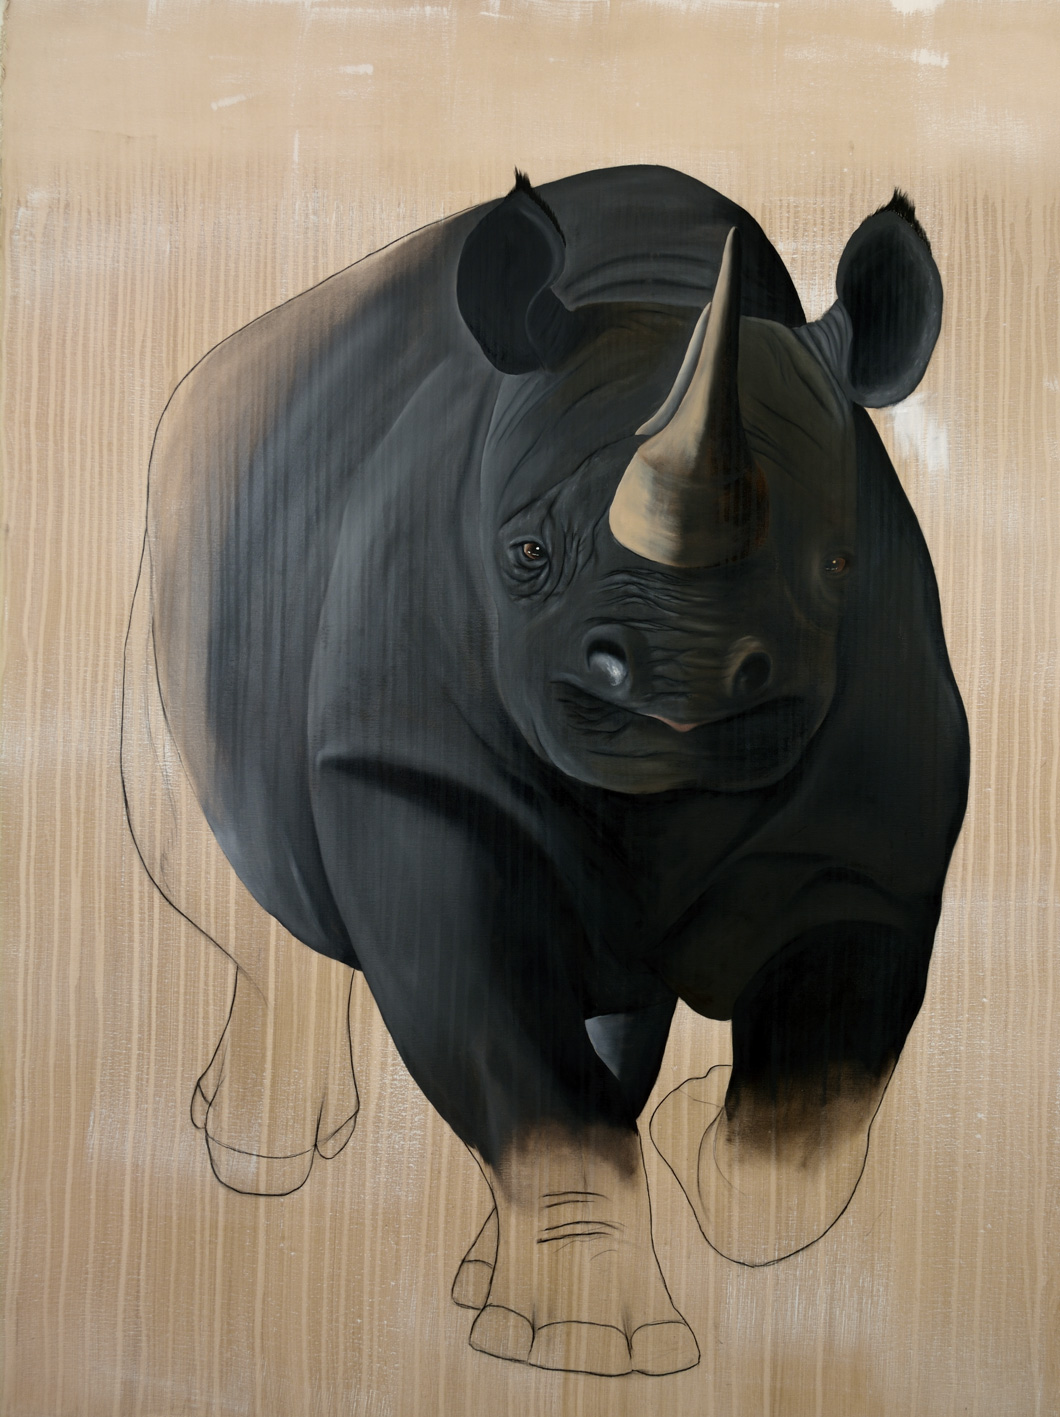 RHINOCEROS-NOIR black-rhino-diceros-bicornisdelete-threatened-endangered-extinction Thierry Bisch Contemporary painter animals painting art decoration nature biodiversity conservation